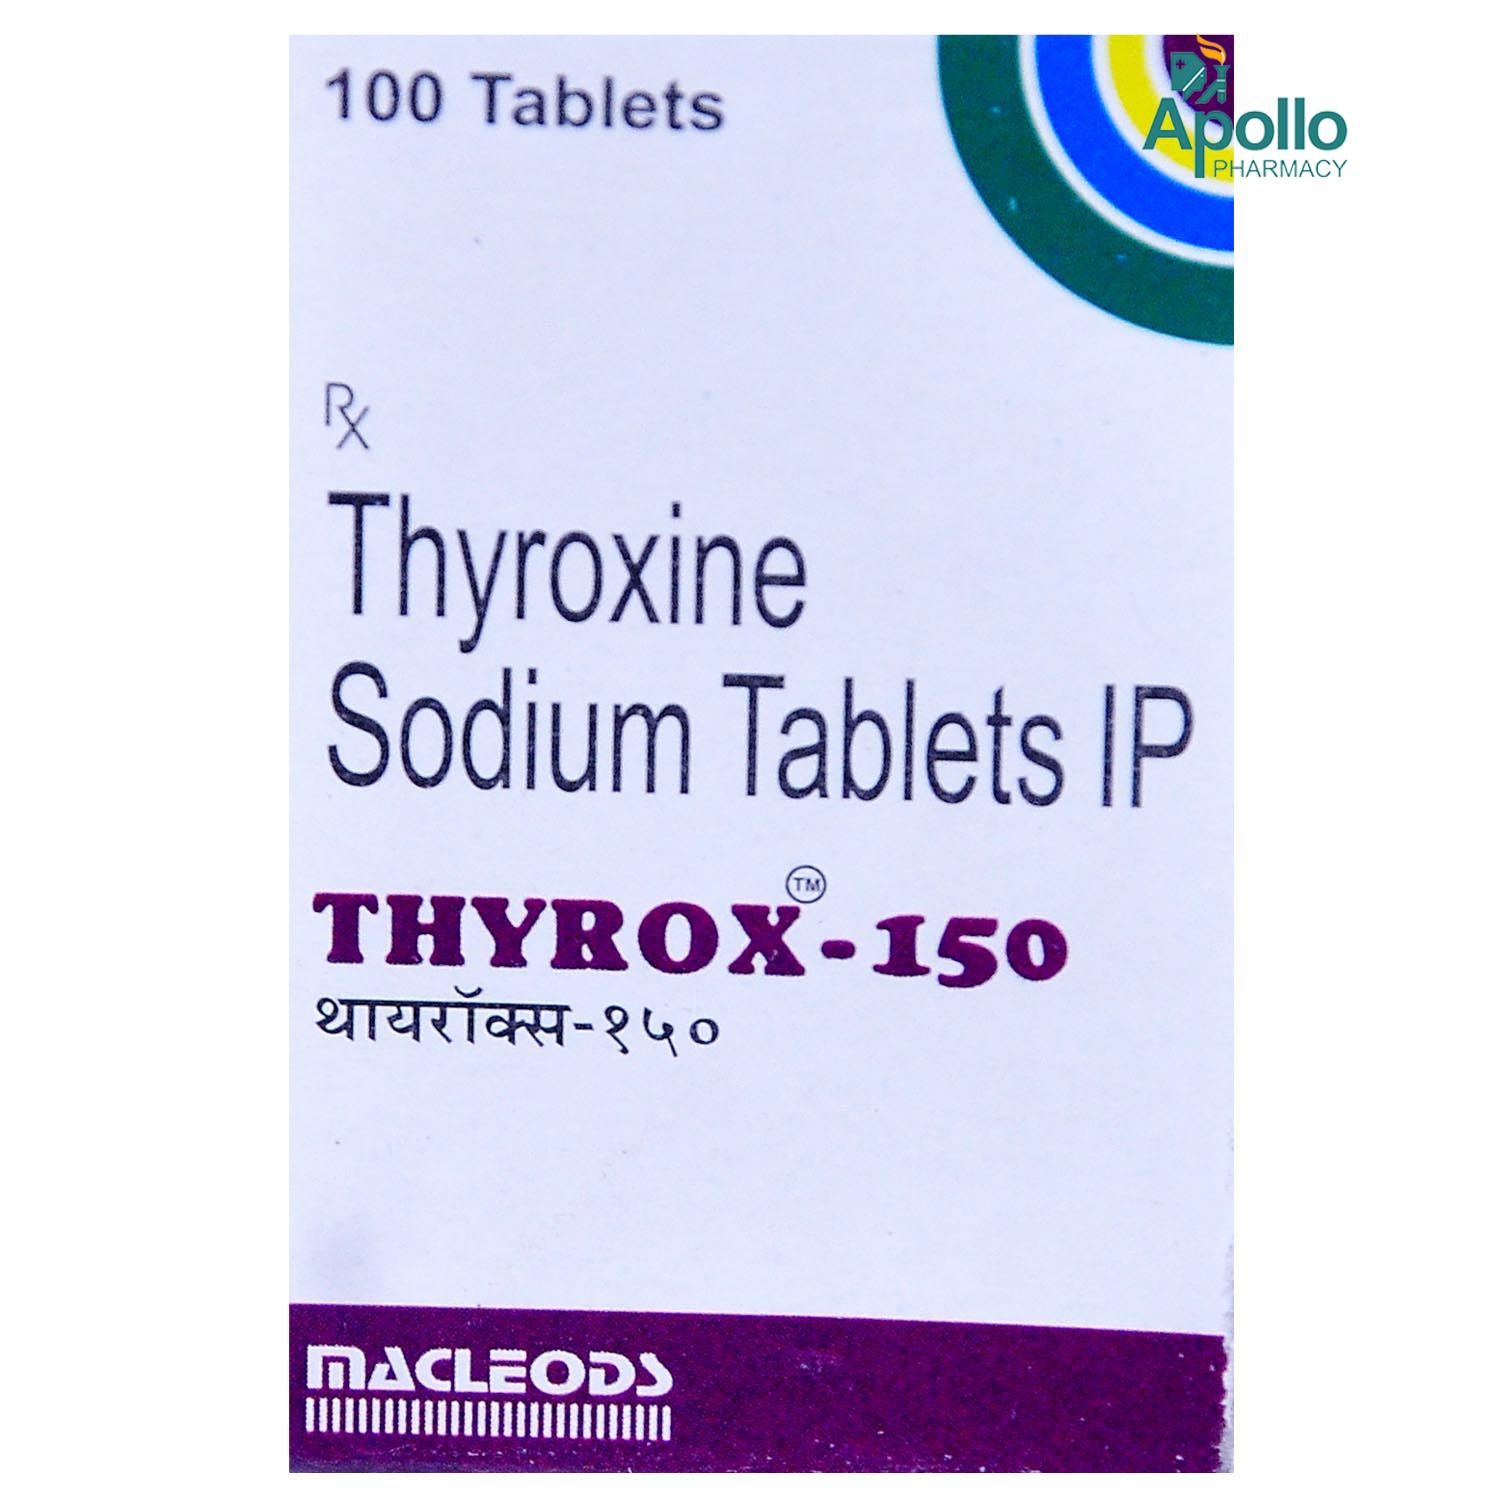 Thyrox-150 Tablet 100's, Pack of 1 TABLET